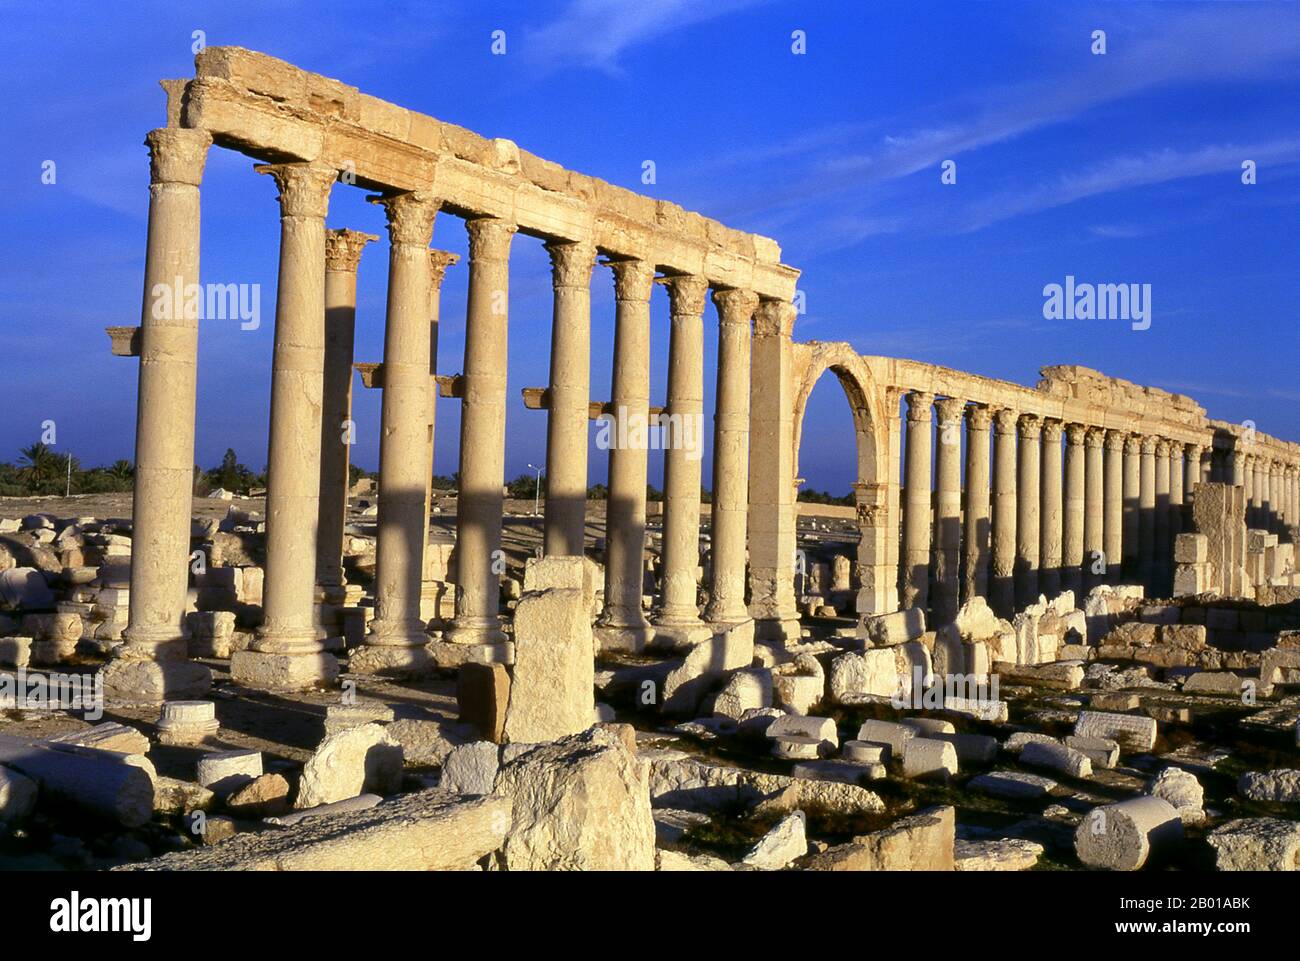 Siria: Parte del Grande colonnato, Palmyra. Palmyra era un'antica città in Siria. Era una città importante nella Siria centrale, situata in un'oasi 215 km a nord-est di Damasco e 180 km a sud-ovest dell'Eufrate a Deir ez-Zor. Era stata a lungo una città carovana vitale per i viaggiatori che attraversavano il deserto siriano ed era conosciuta come la sposa del deserto. Il primo riferimento documentato alla città con il suo nome semitico Tadmor, Tadmur o Tudmur (che significa 'la città che si respinge' in Amorite e 'la città indomitabile' in Aramaico) è registrato in compresse babilonesi trovati in Mari. Foto Stock